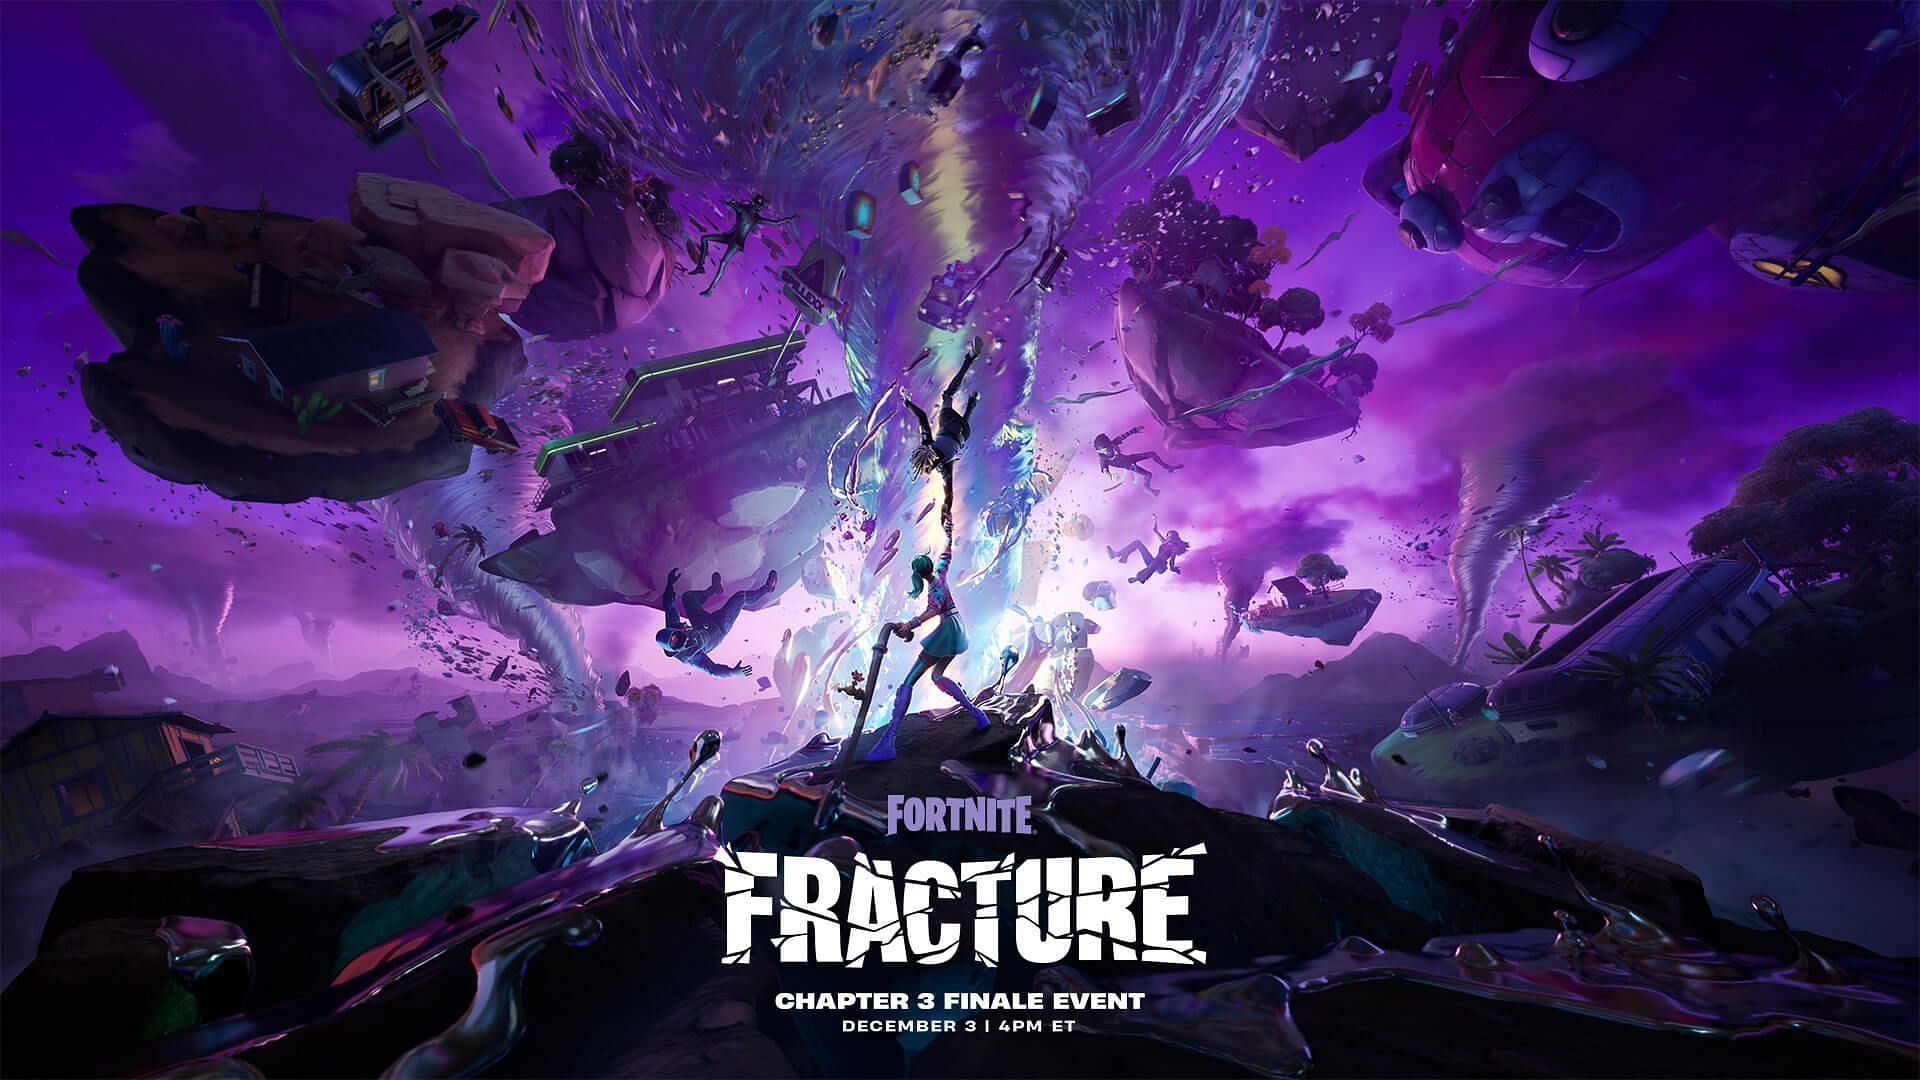 Fortnite Fracture event teaser (Image via Epic Games)